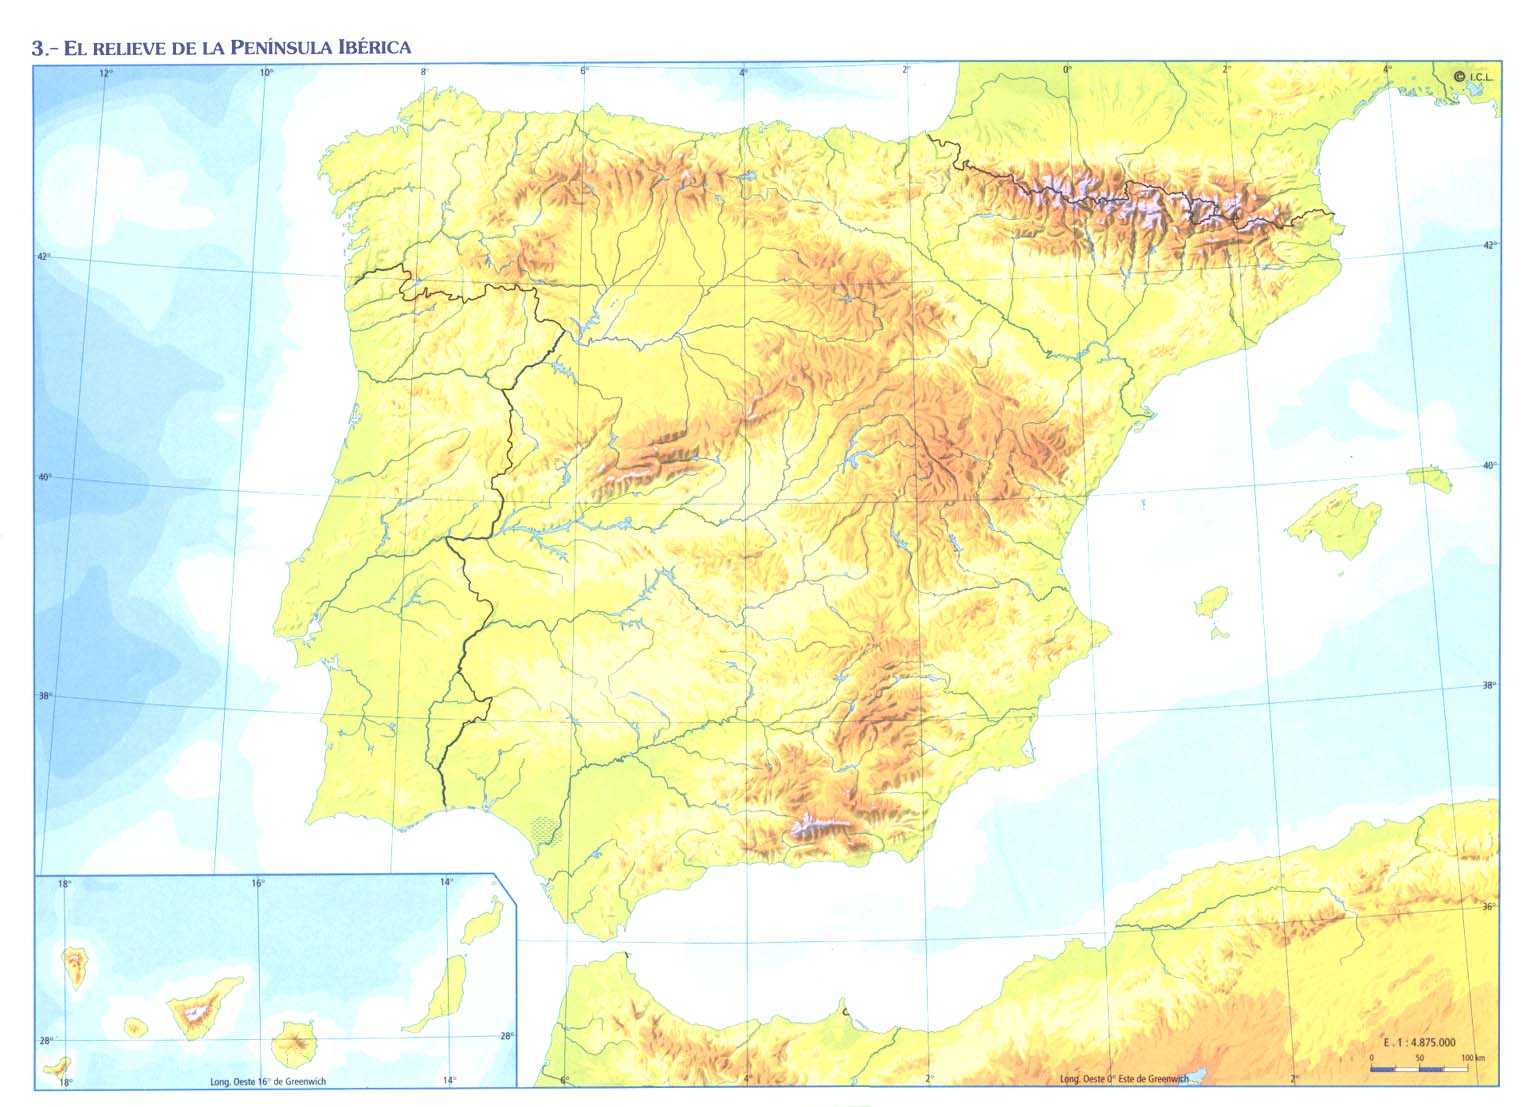 Juegos De Geografía Juego De Relieve De España En El Mapa Cerebriti 3260